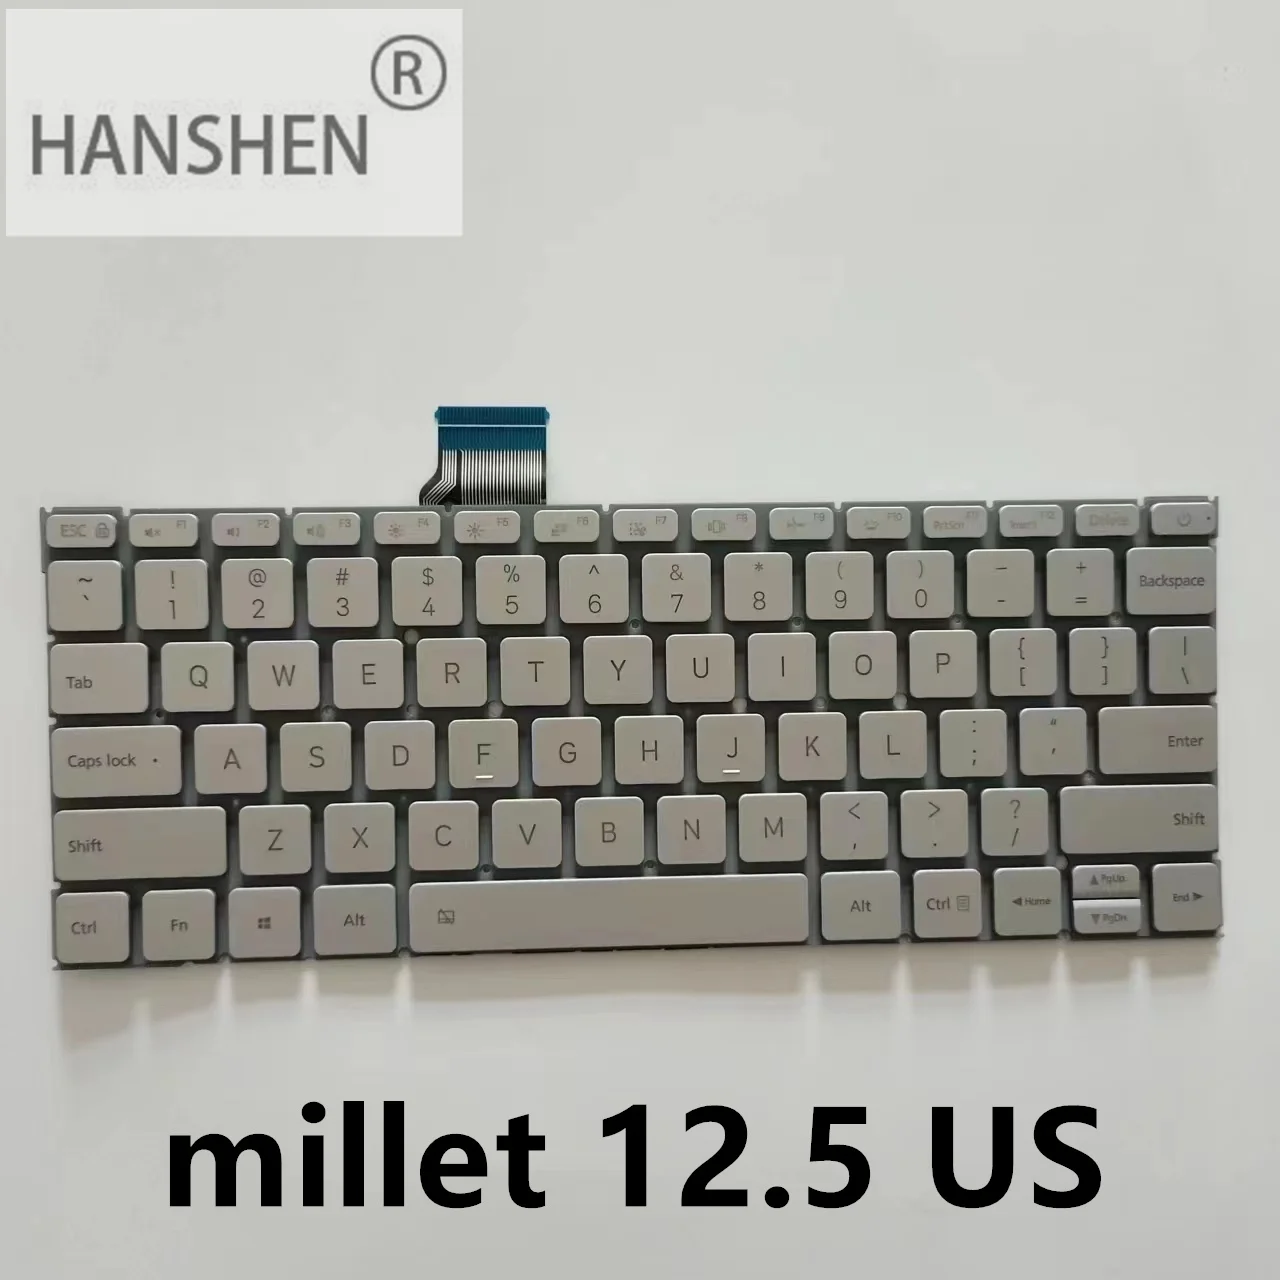 

HANSHEN American New Keyboard Backlight for Xiaomi 12.5 161201-01 161201-AA AQ AI AL YG TM1607 Laptop Silver Backlight